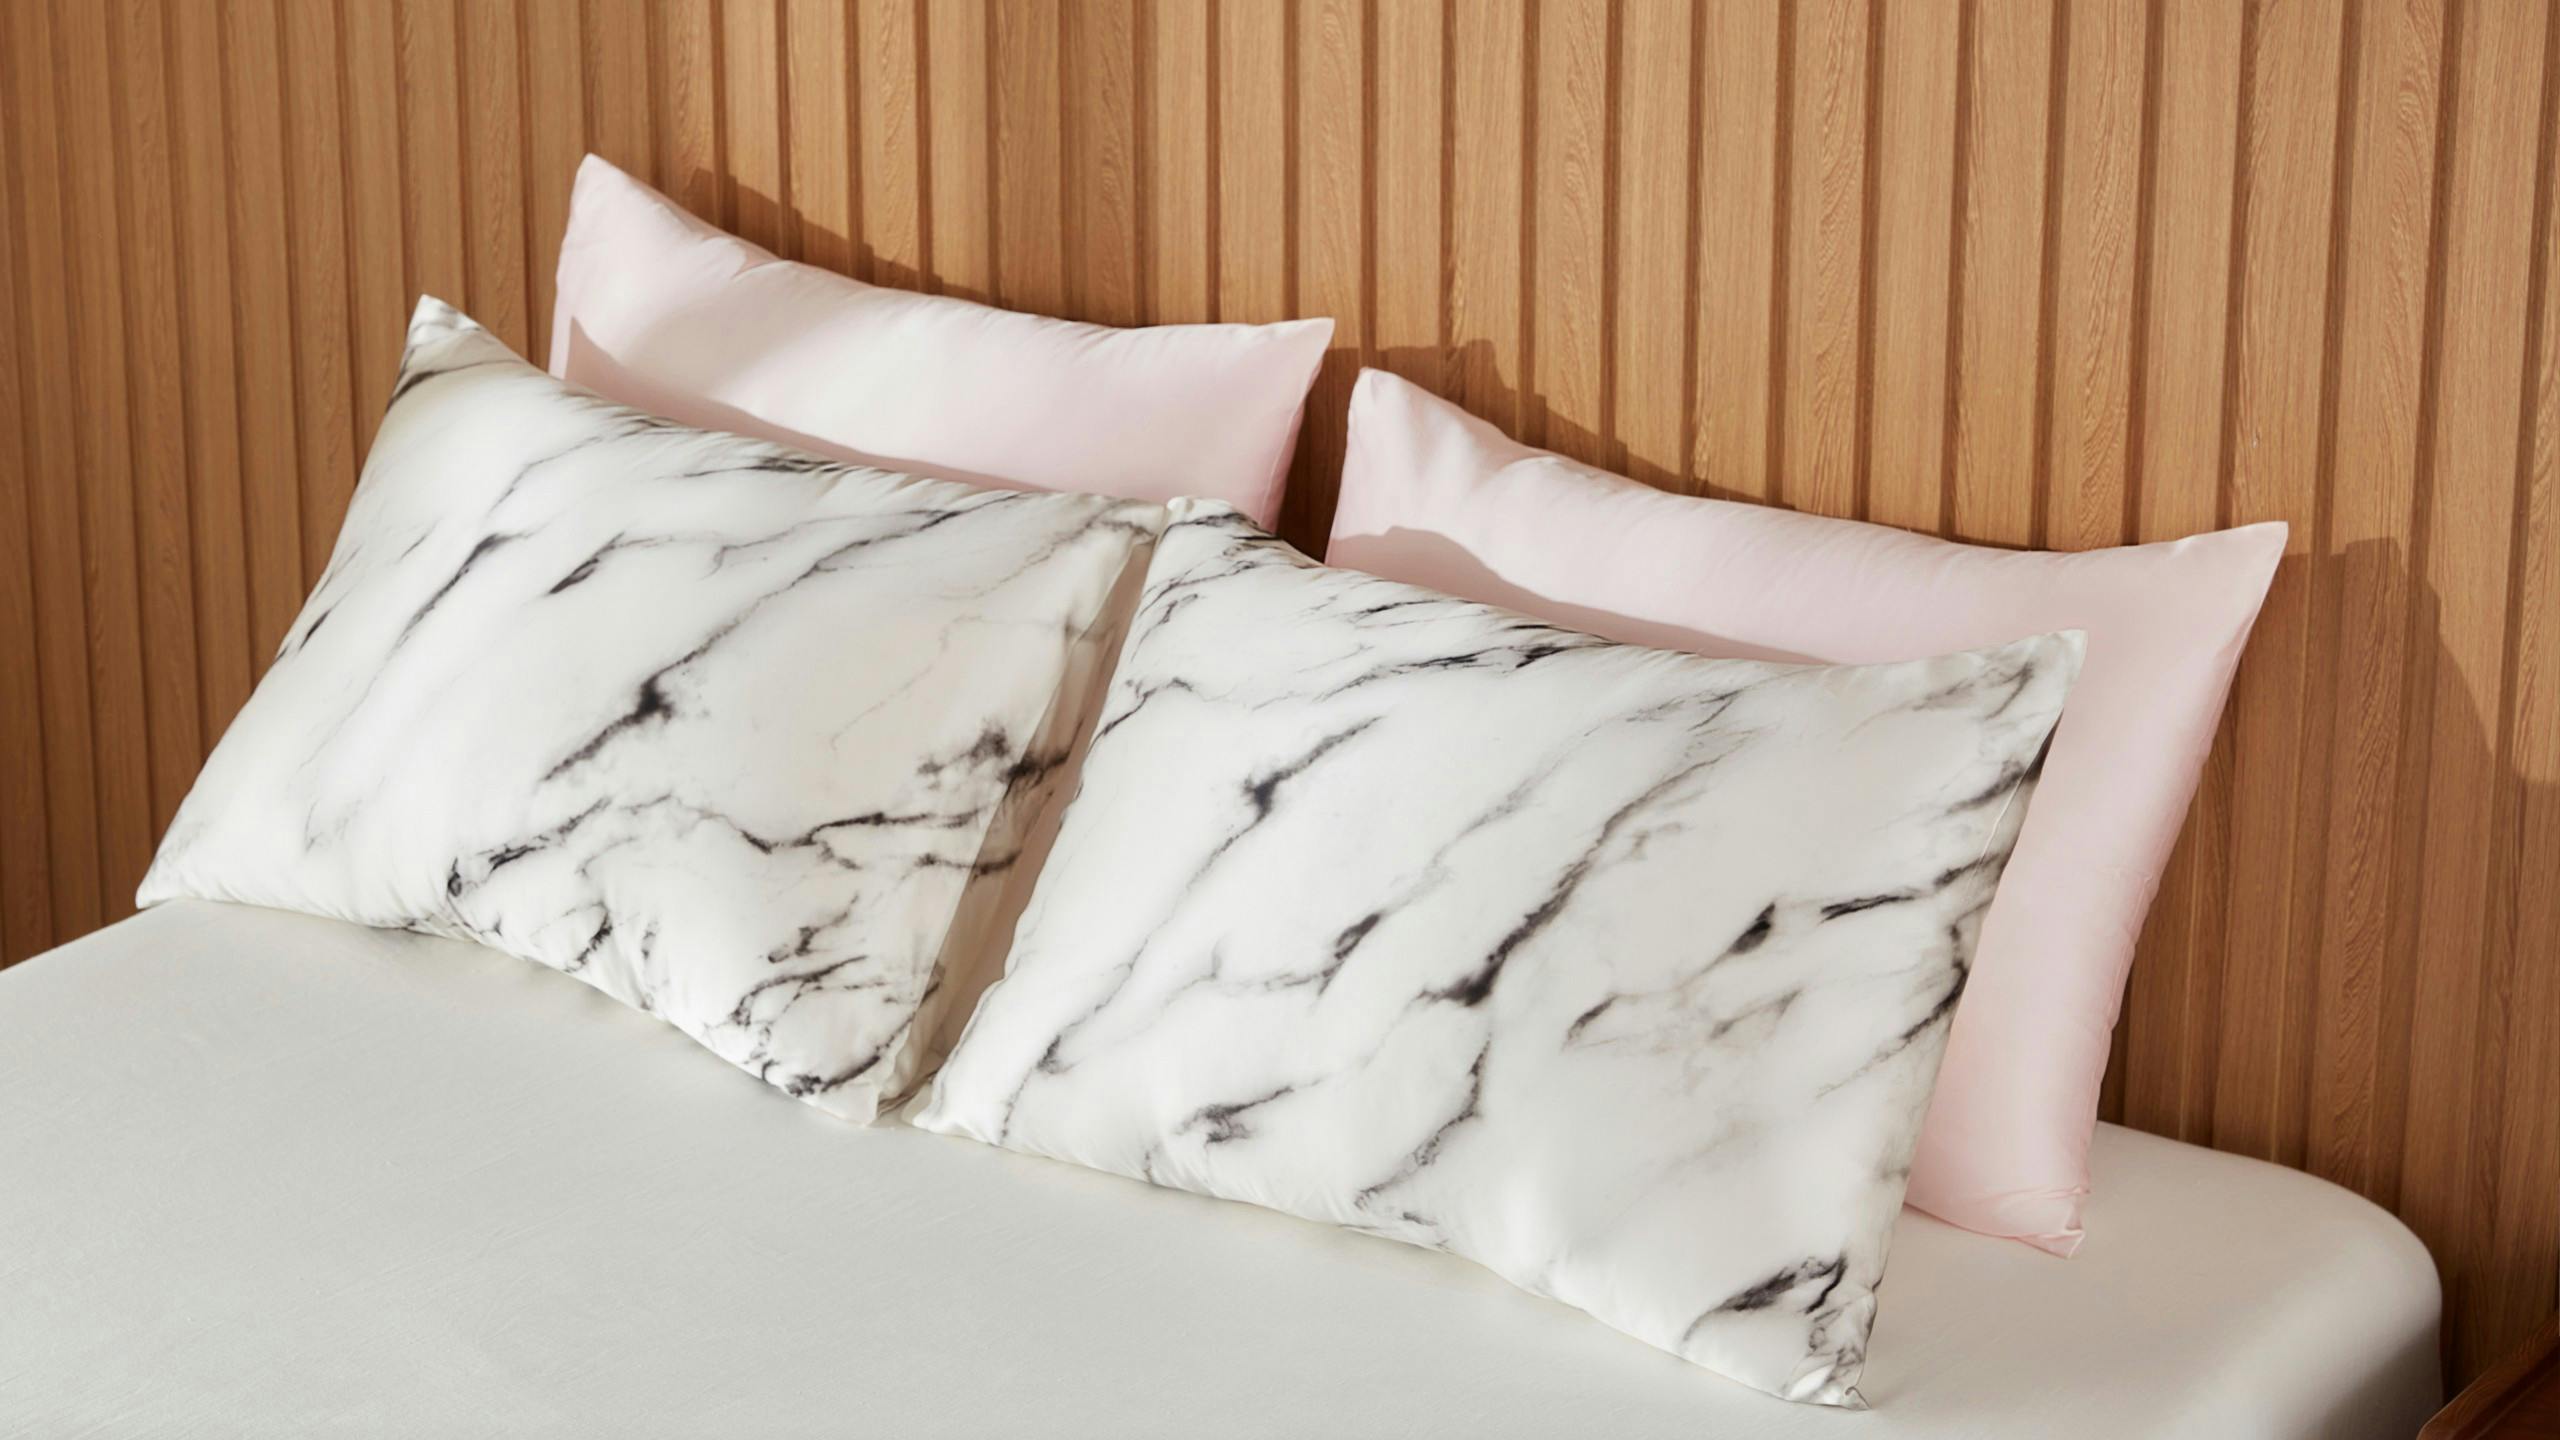 Ecosa Silk Pillowcase